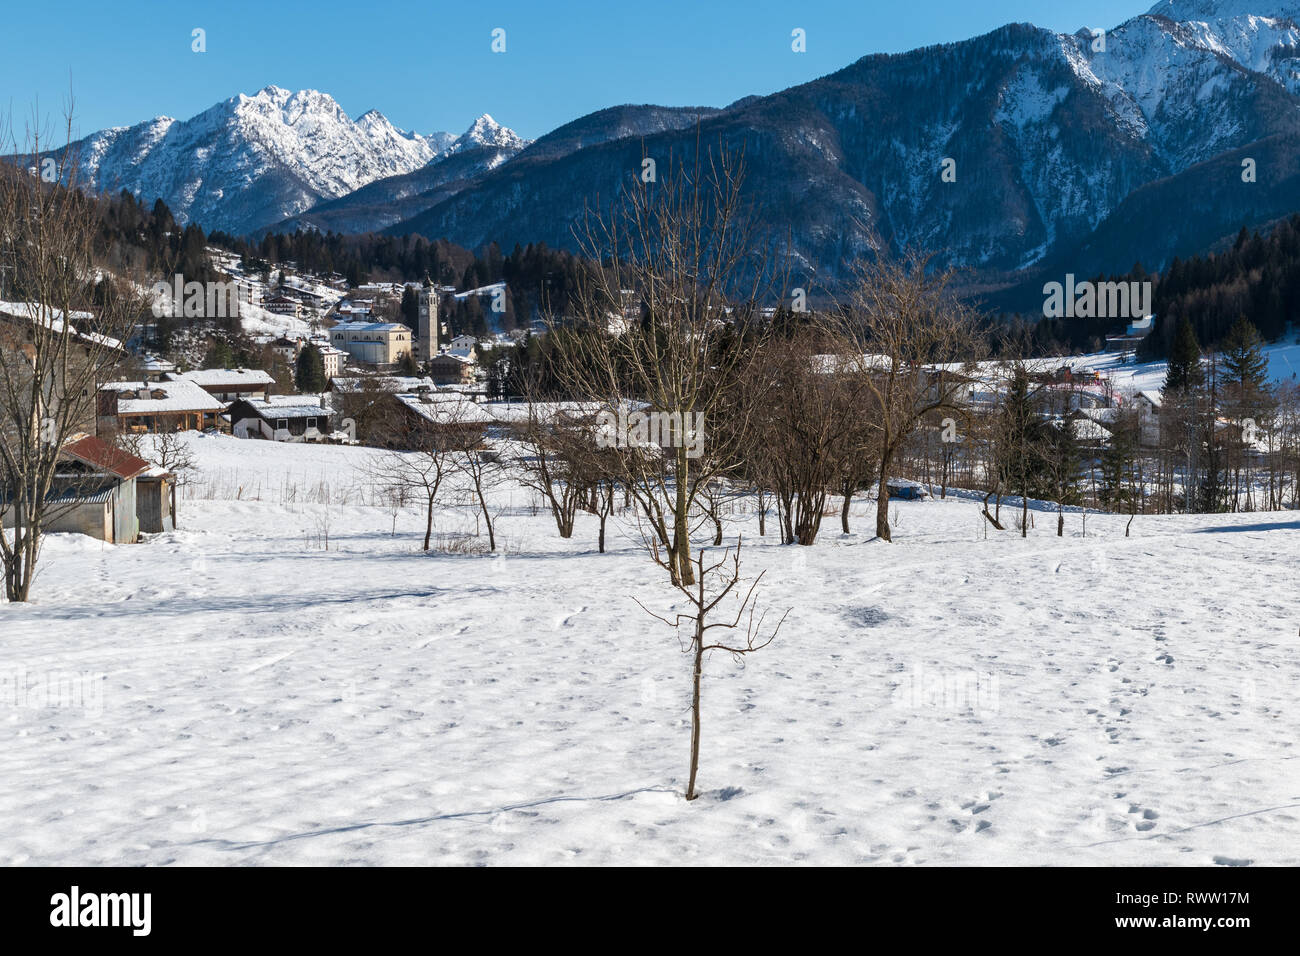 Forni di Sopra. Inverno e neve nella perla delle Dolomiti Friulane. Italia Foto Stock